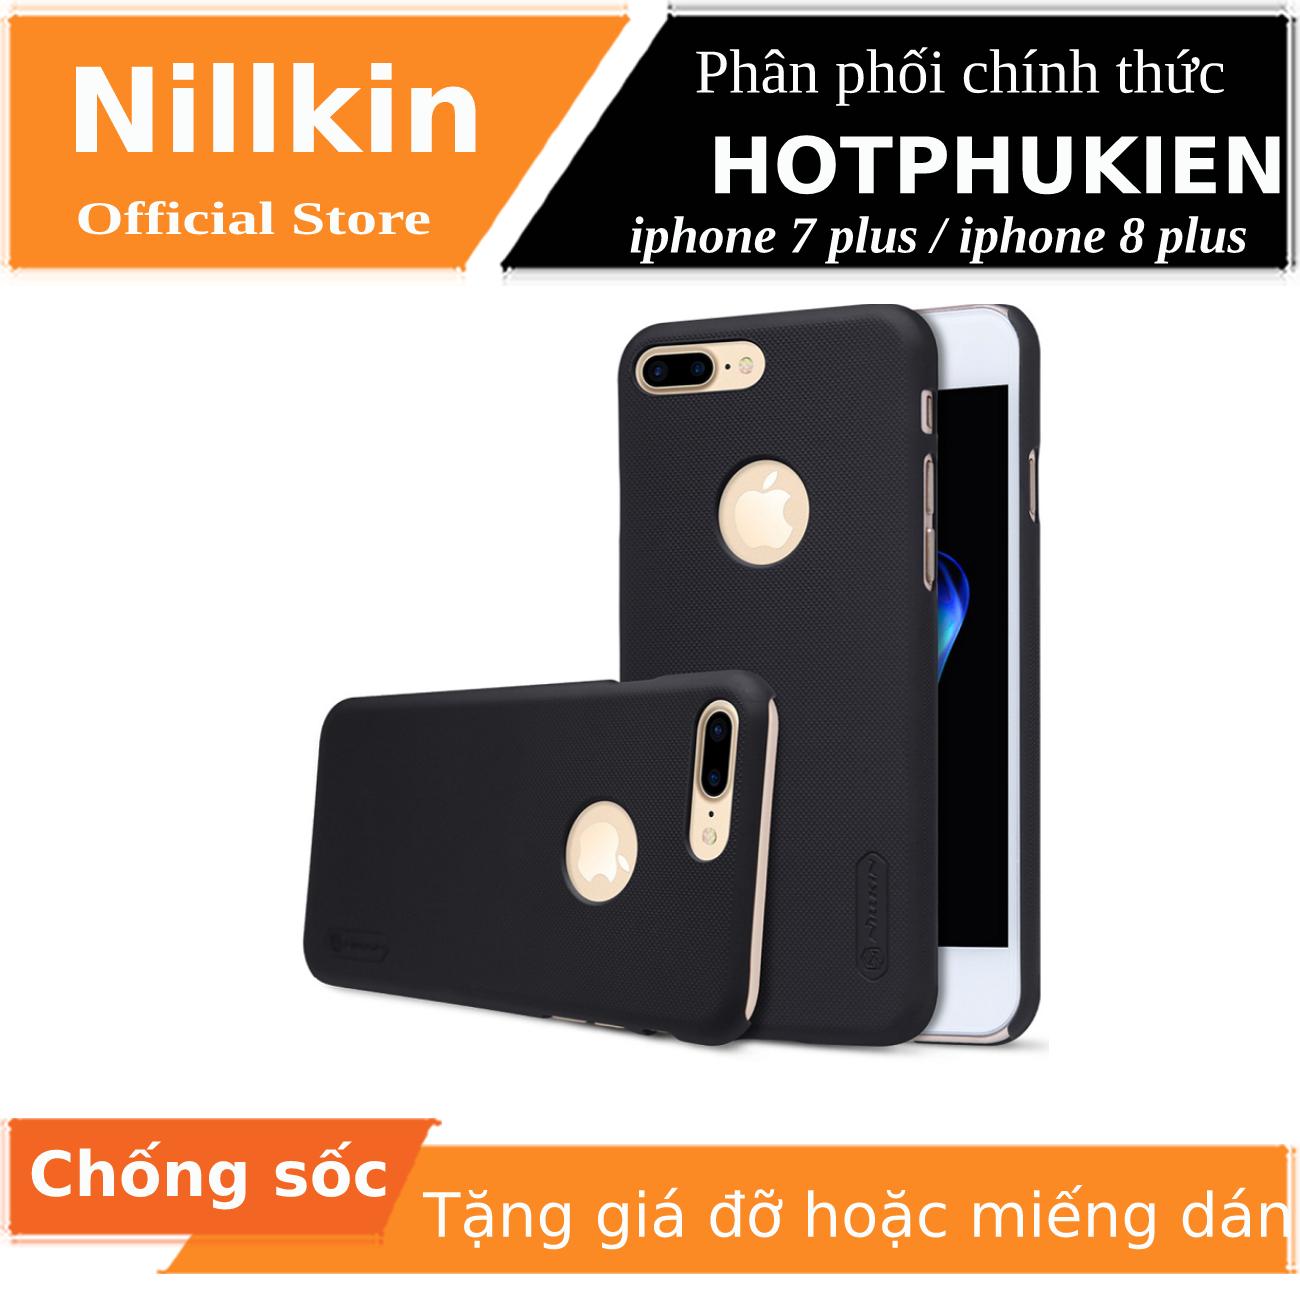 Ốp Lưng Sần chống sốc cho iPhone 7 Plus / iPhone 8 Plus hiệu Nillkin Super Frosted Shield (tặng kèm giá đỡ hoặc miếng dán từ tính)